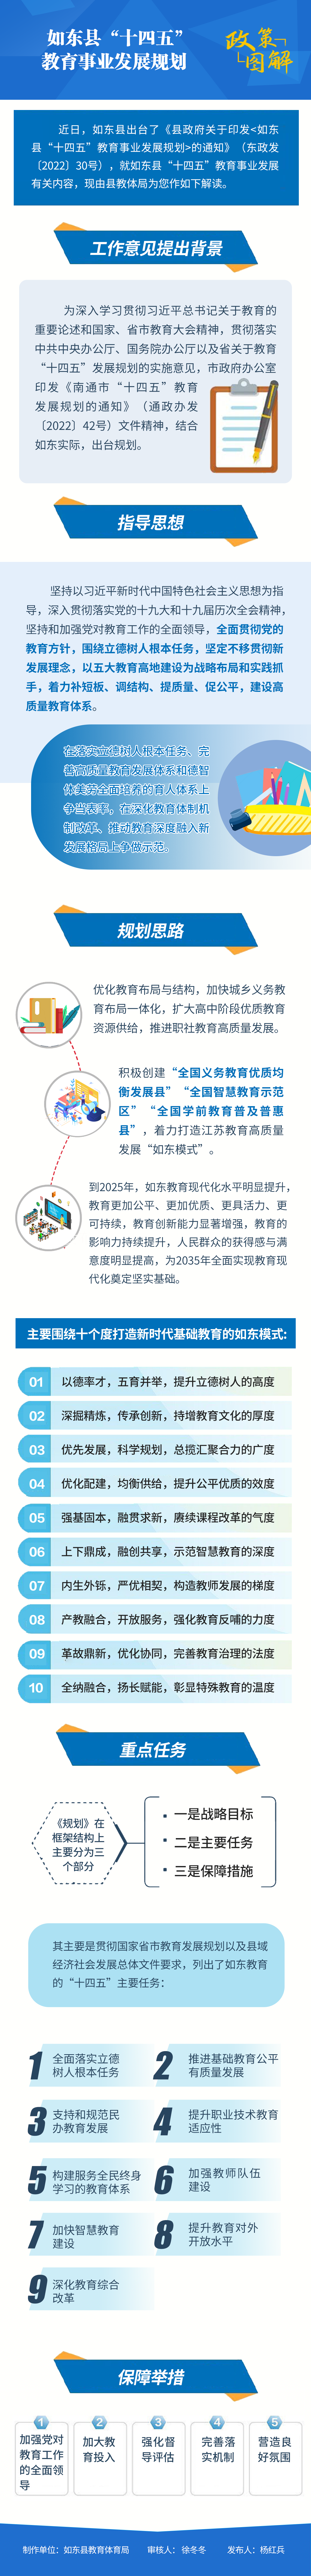 如东县“十四五”教育事业发展规划--.png